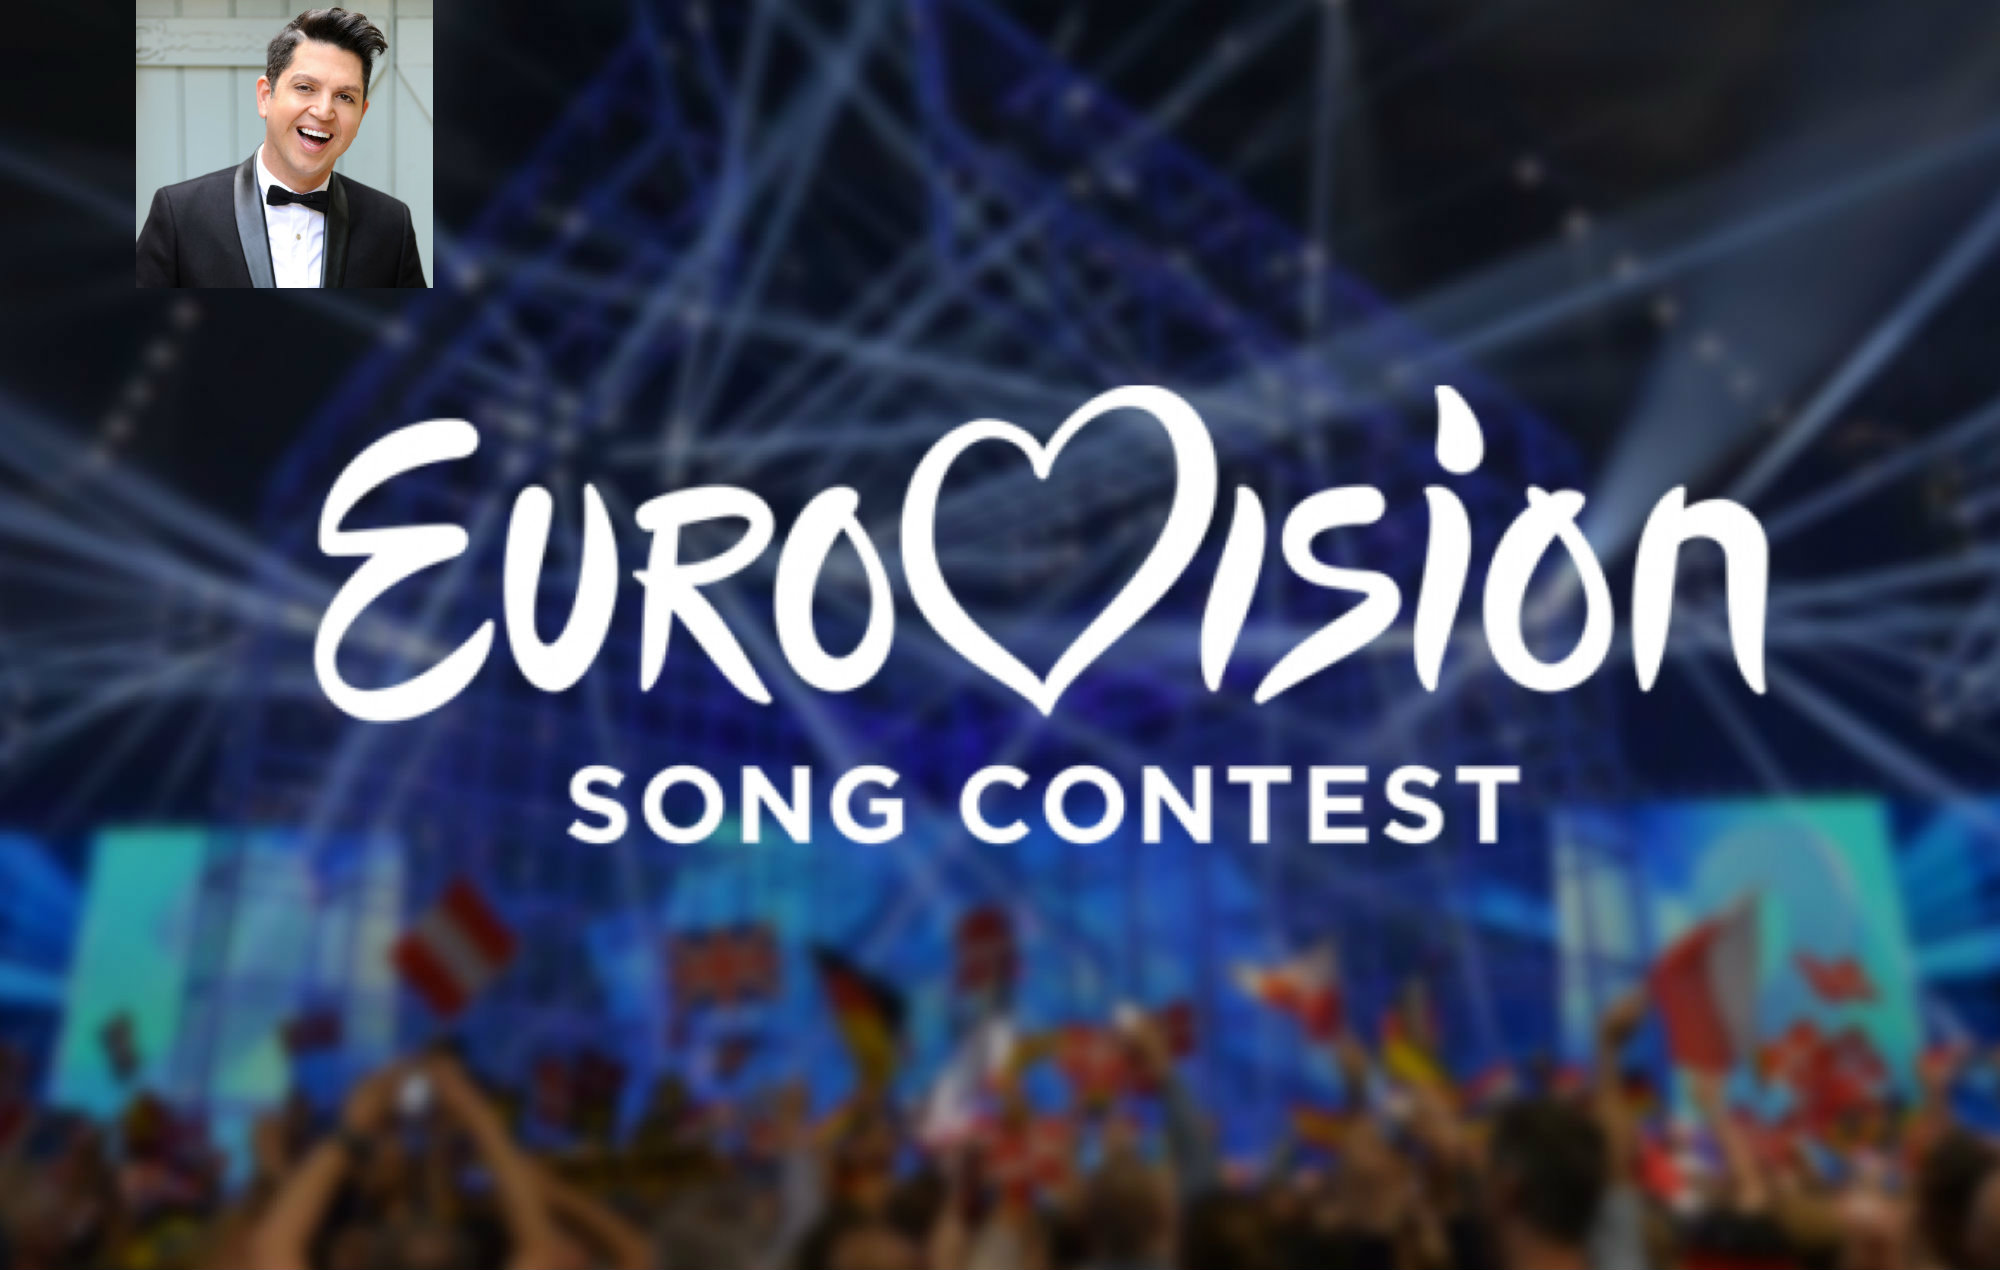 Ποιος τραγουδιστής και νικητής της Eurovision αρραβωνιάστηκε με τον σύντροφό του;